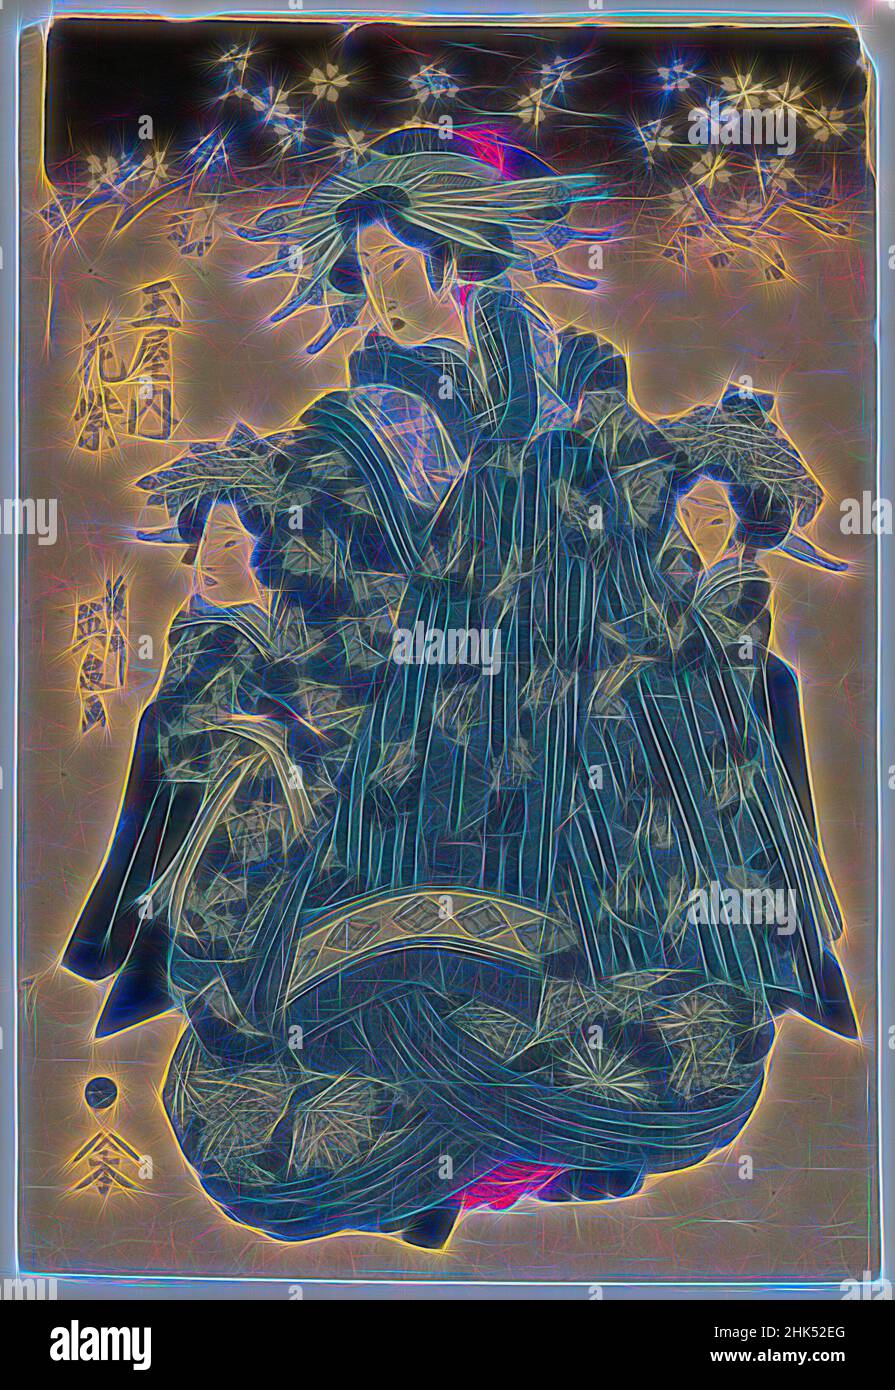 Ispirato da Hanamurasaki del Tamaya, Eisen Keisai, giapponese, 1790-1848, stampa a blocchi di legno, Giappone, ca. 1830, periodo Edo, 15 1/8 x 10 1/4 pollici, 38,4 x 26 cm, reinventato da Artotop. L'arte classica reinventata con un tocco moderno. Design di calda e allegra luminosità e di raggi di luce. La fotografia si ispira al surrealismo e al futurismo, abbracciando l'energia dinamica della tecnologia moderna, del movimento, della velocità e rivoluzionando la cultura Foto Stock